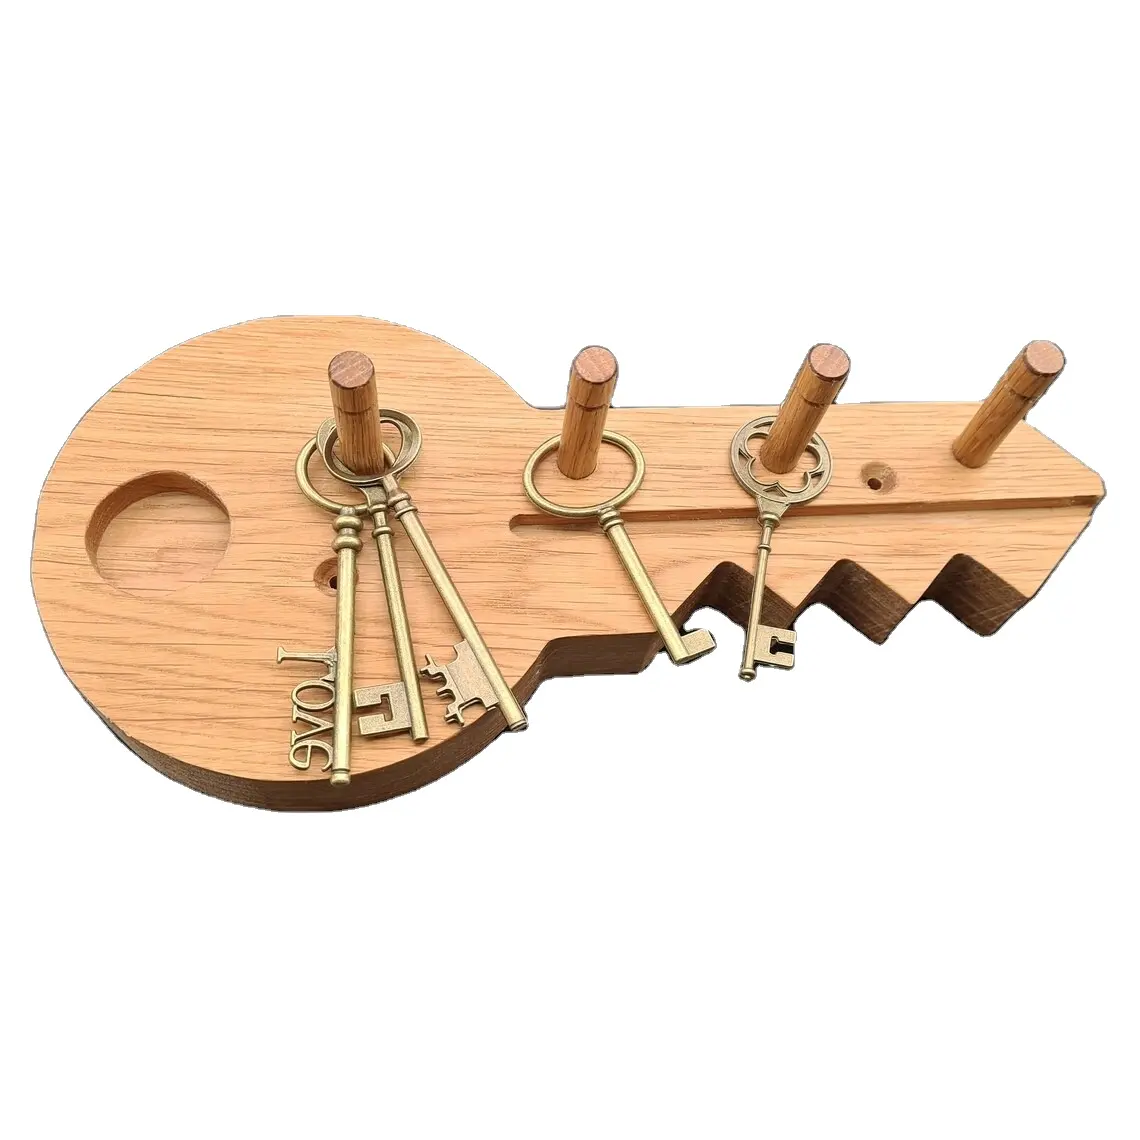 Personal isierter hölzerner Schlüssel halter für wand dekoratives Holzwand regal